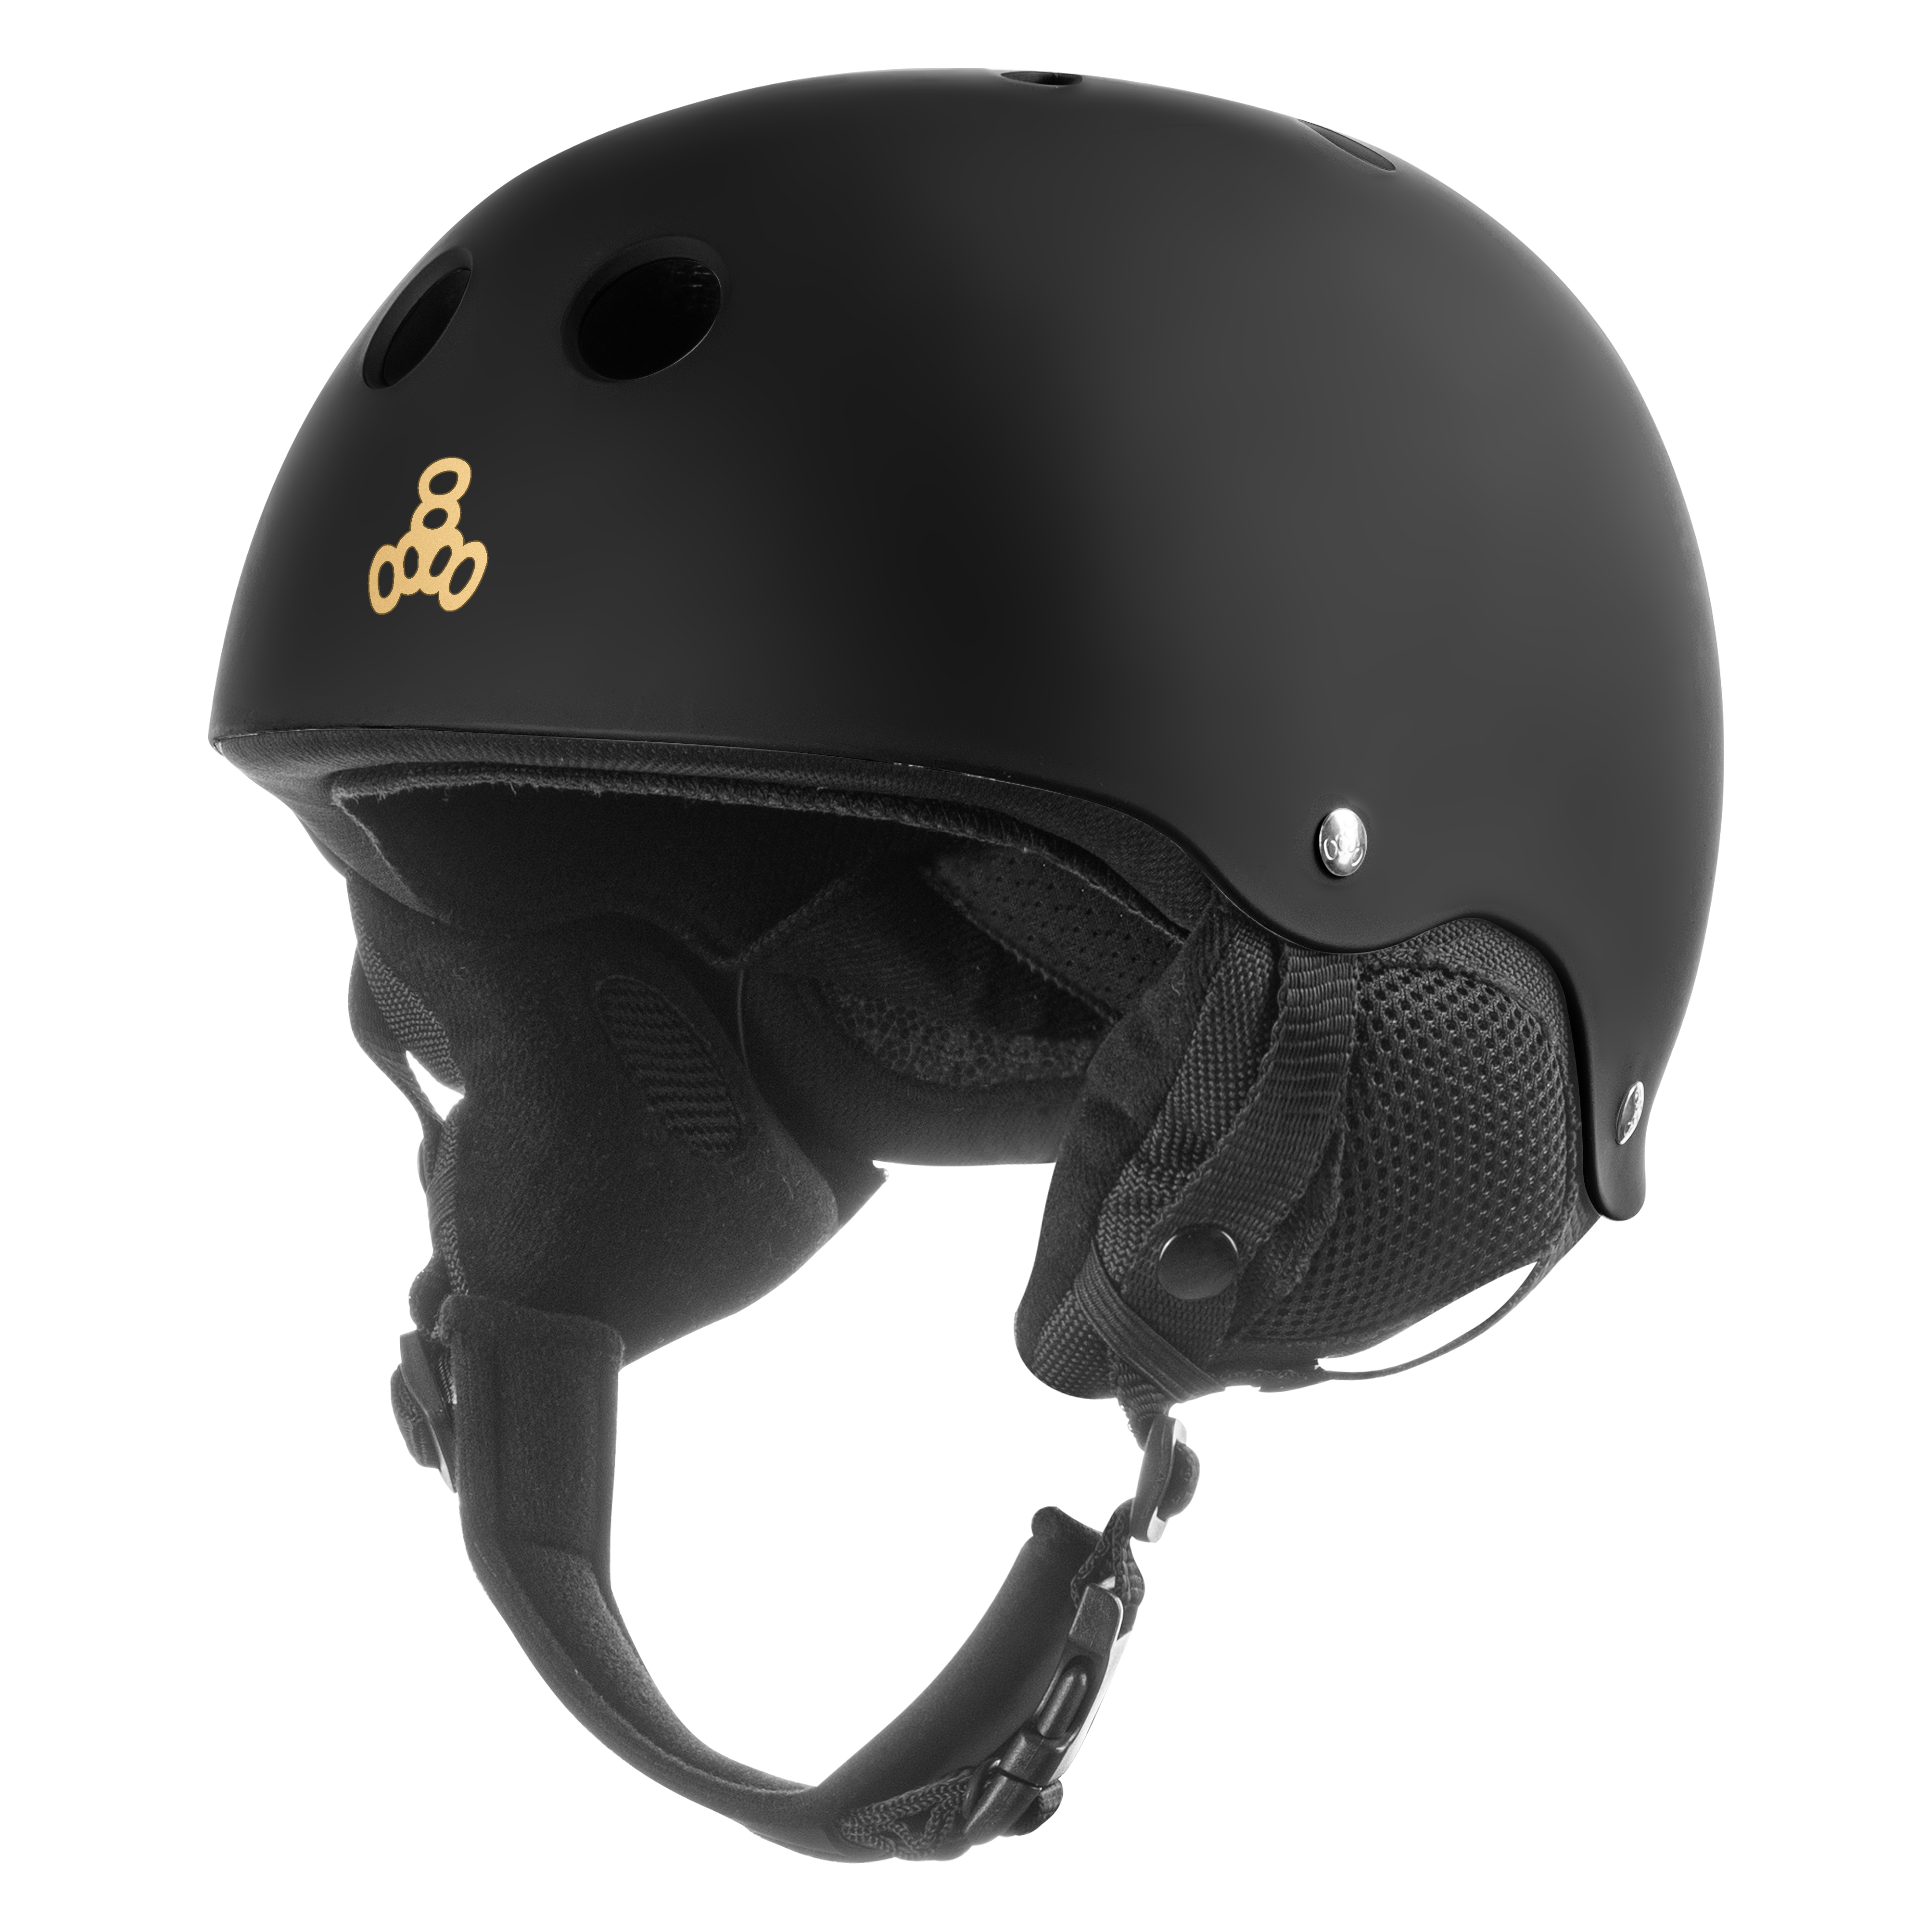 Купить защитный шлем для детей Triple8 Old School Jr Black (XS) в Киеве